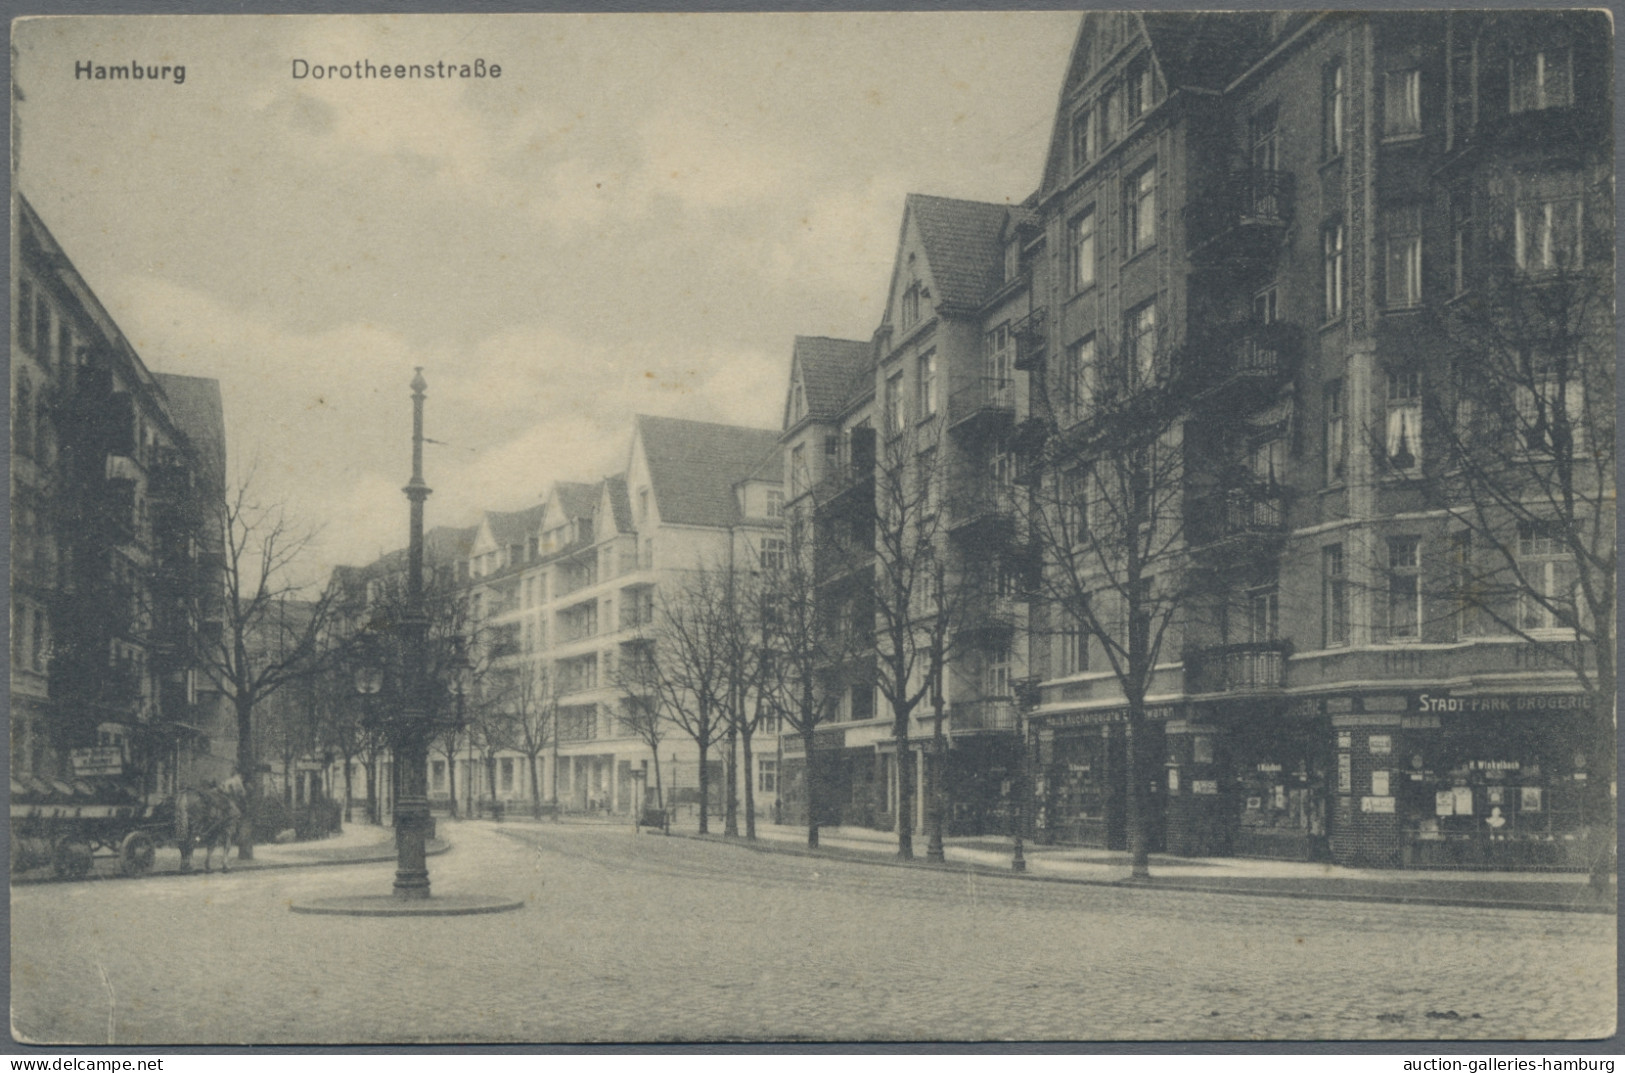 Heimat: Hamburg: 1898-1990 (ca.), Heimatsammlung mit u.a. etwa 450 meist älteren